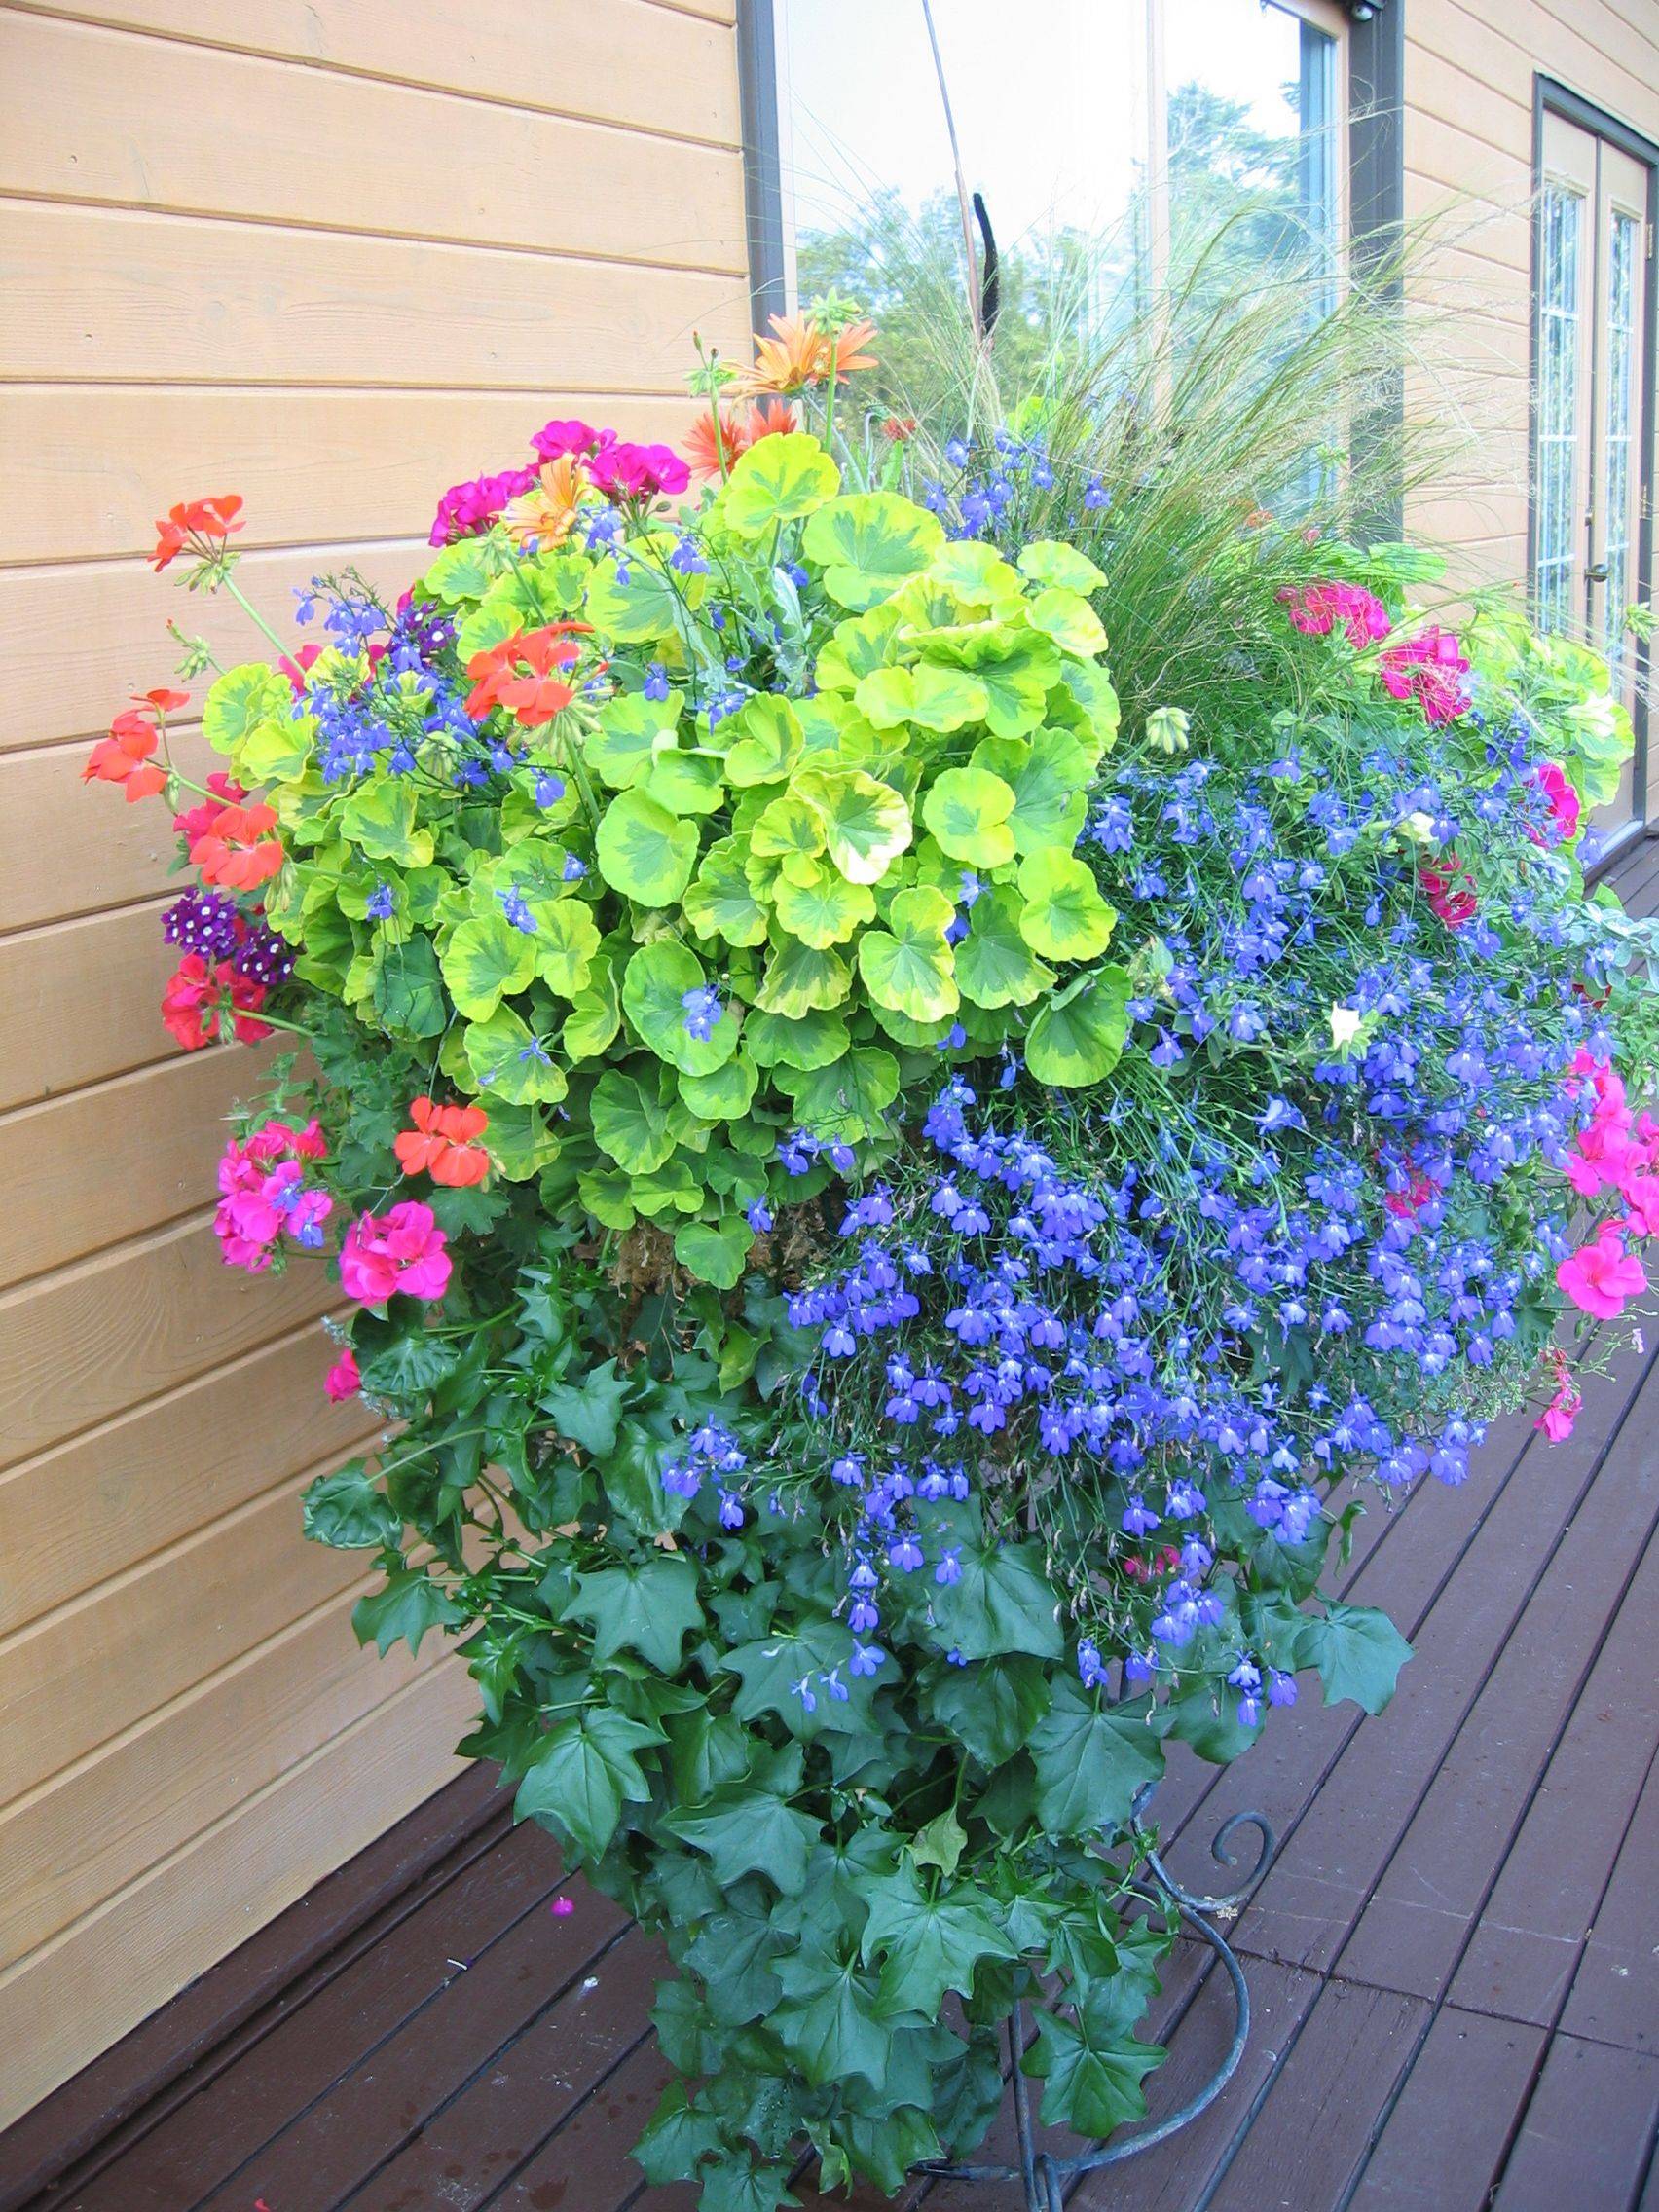 Wonderful Summer Container Garden Flower Ideas